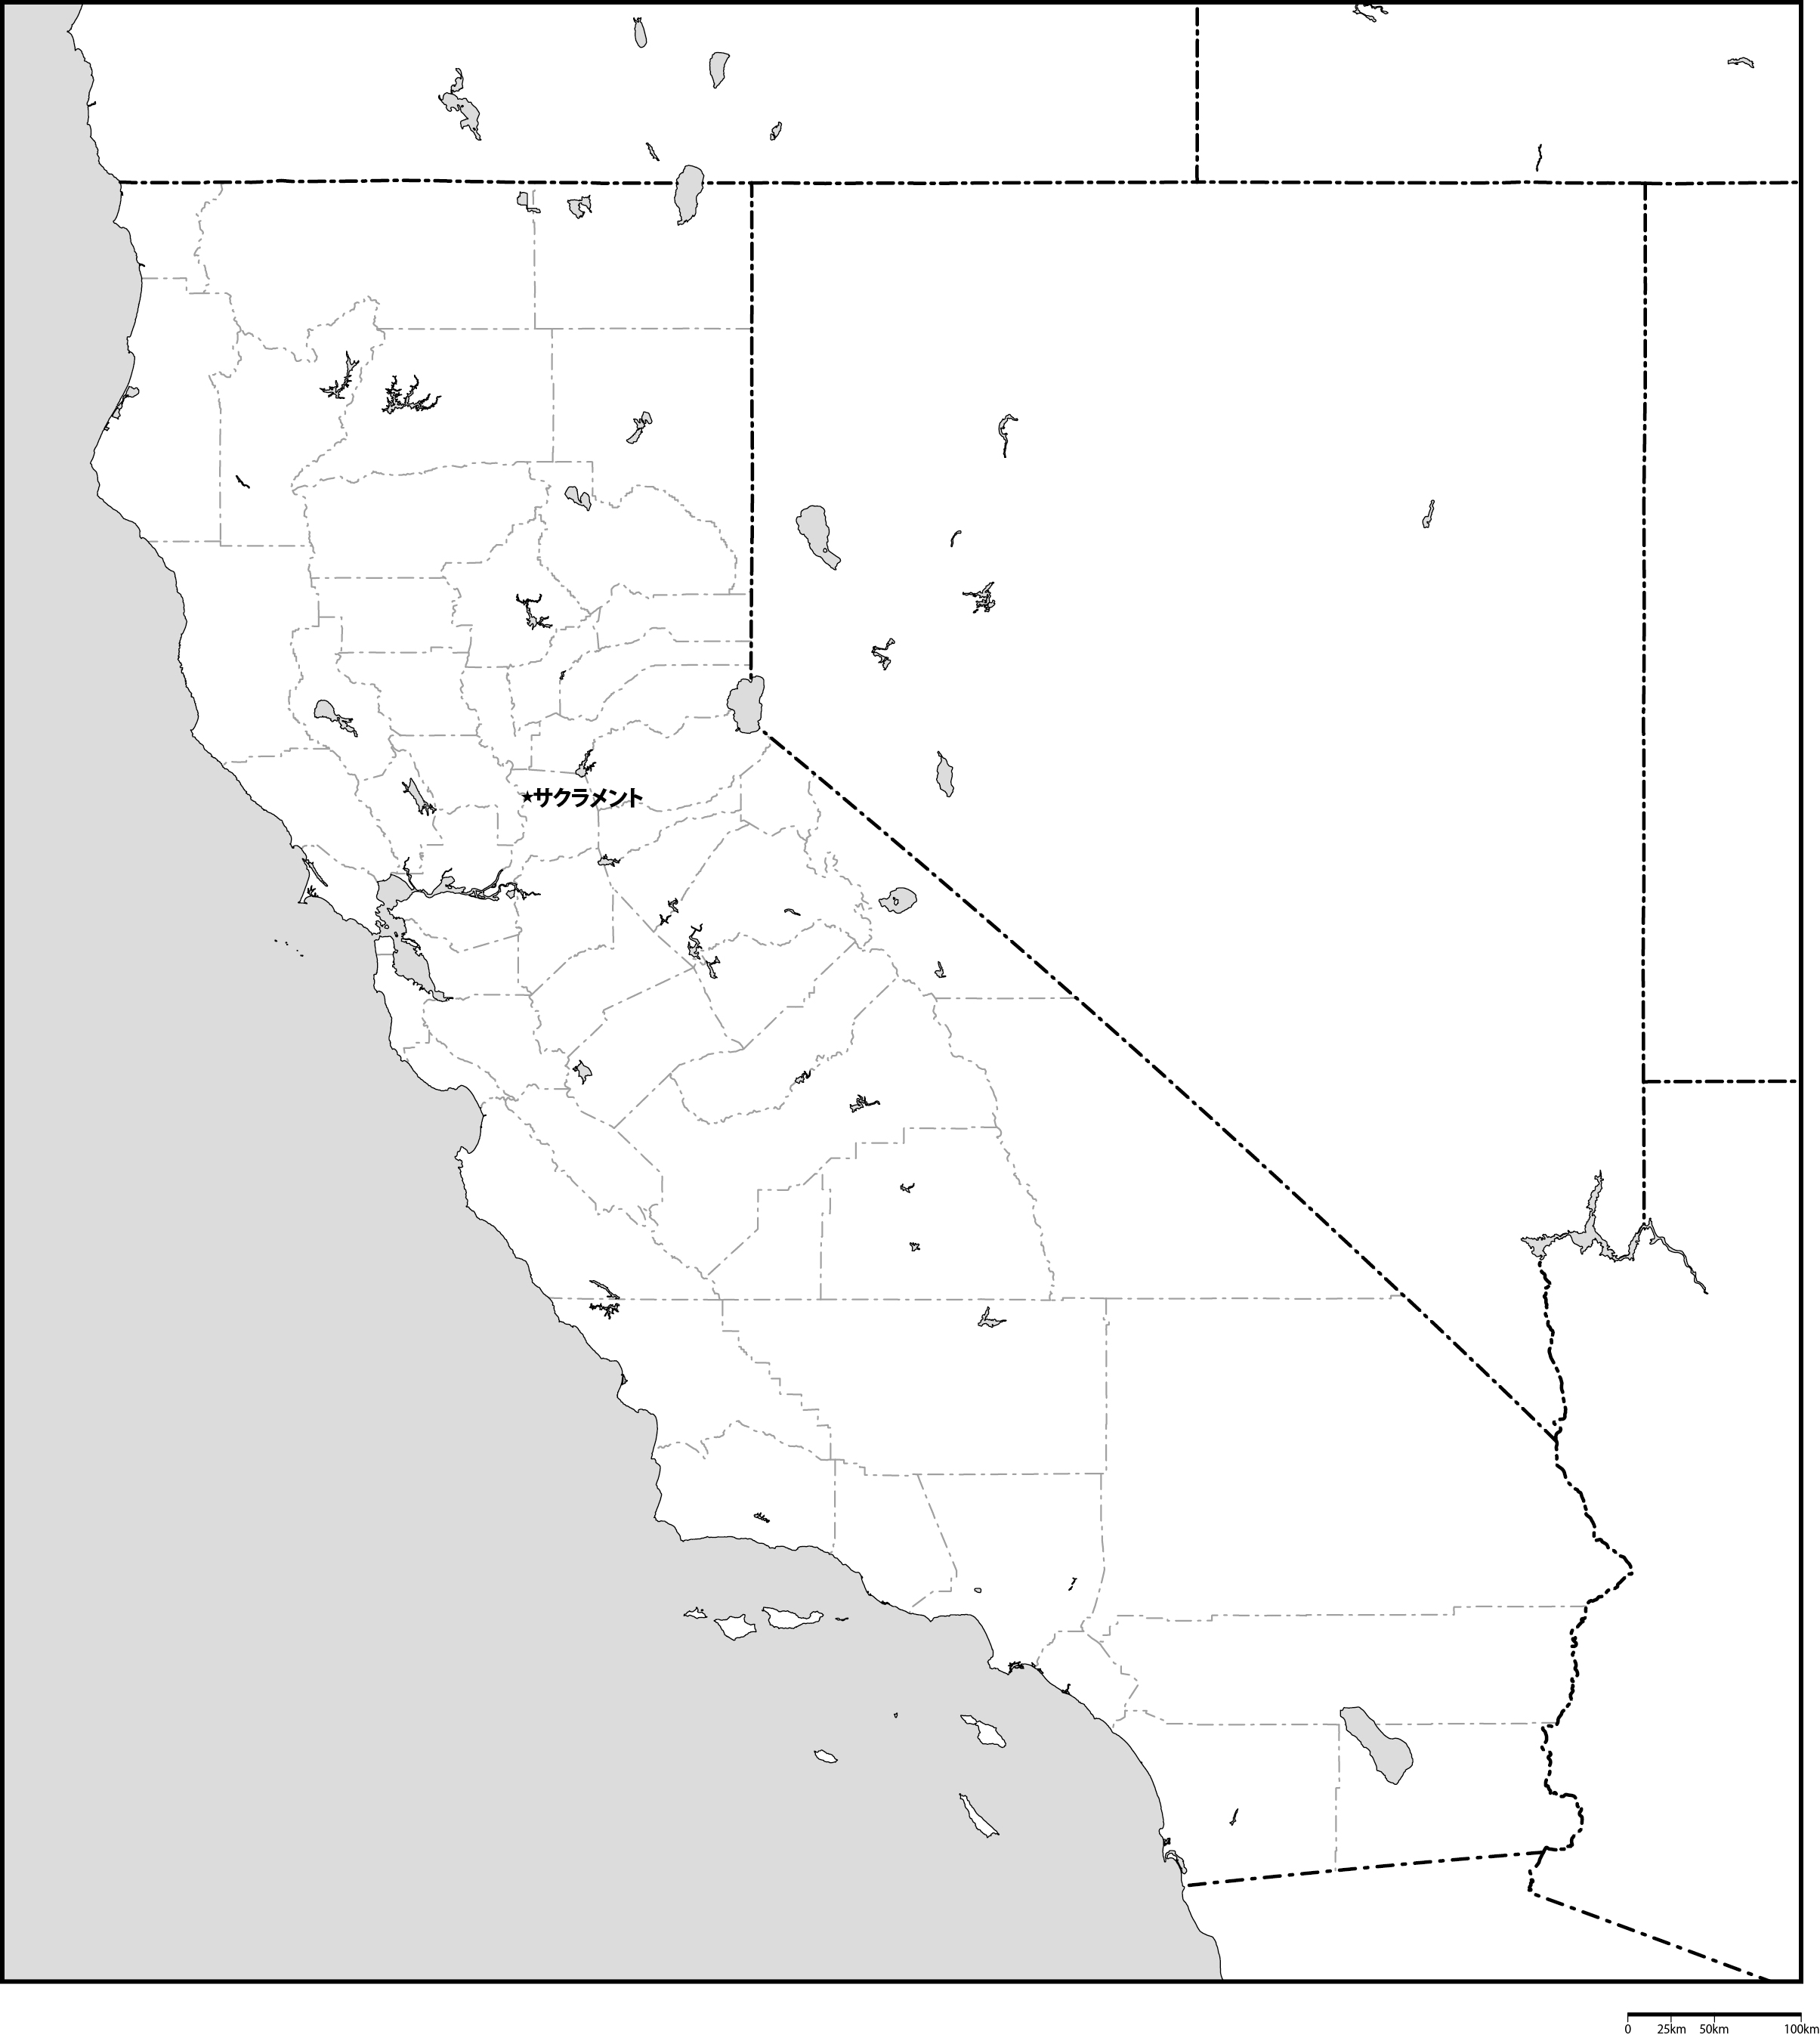 カリフォルニア州郡分け白地図州都あり(日本語)フリーデータの画像